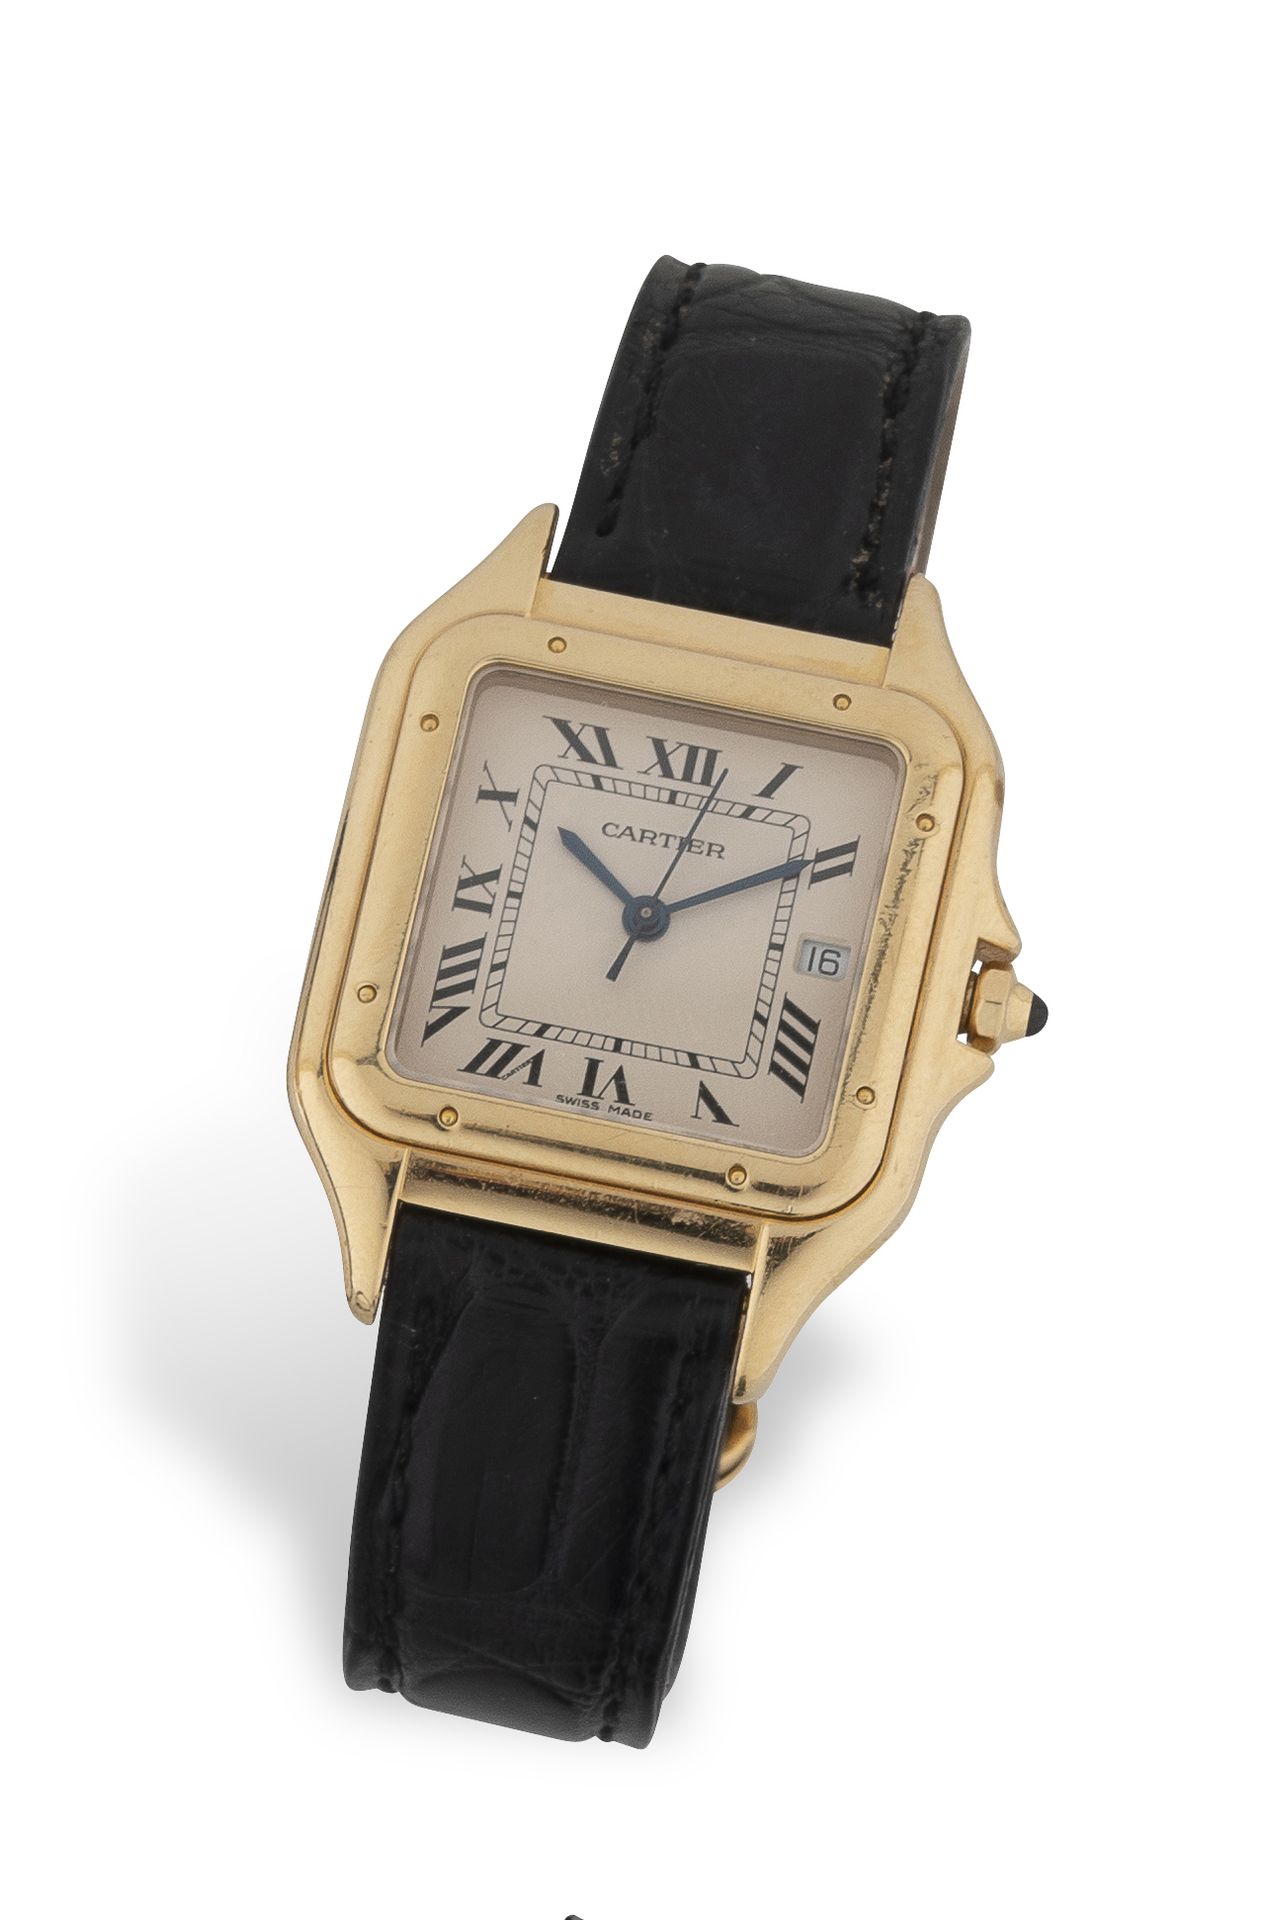 CARTIER "PANTHERE" Reloj de pulsera de señora en oro amarillo (750).

Esfera de &hellip;